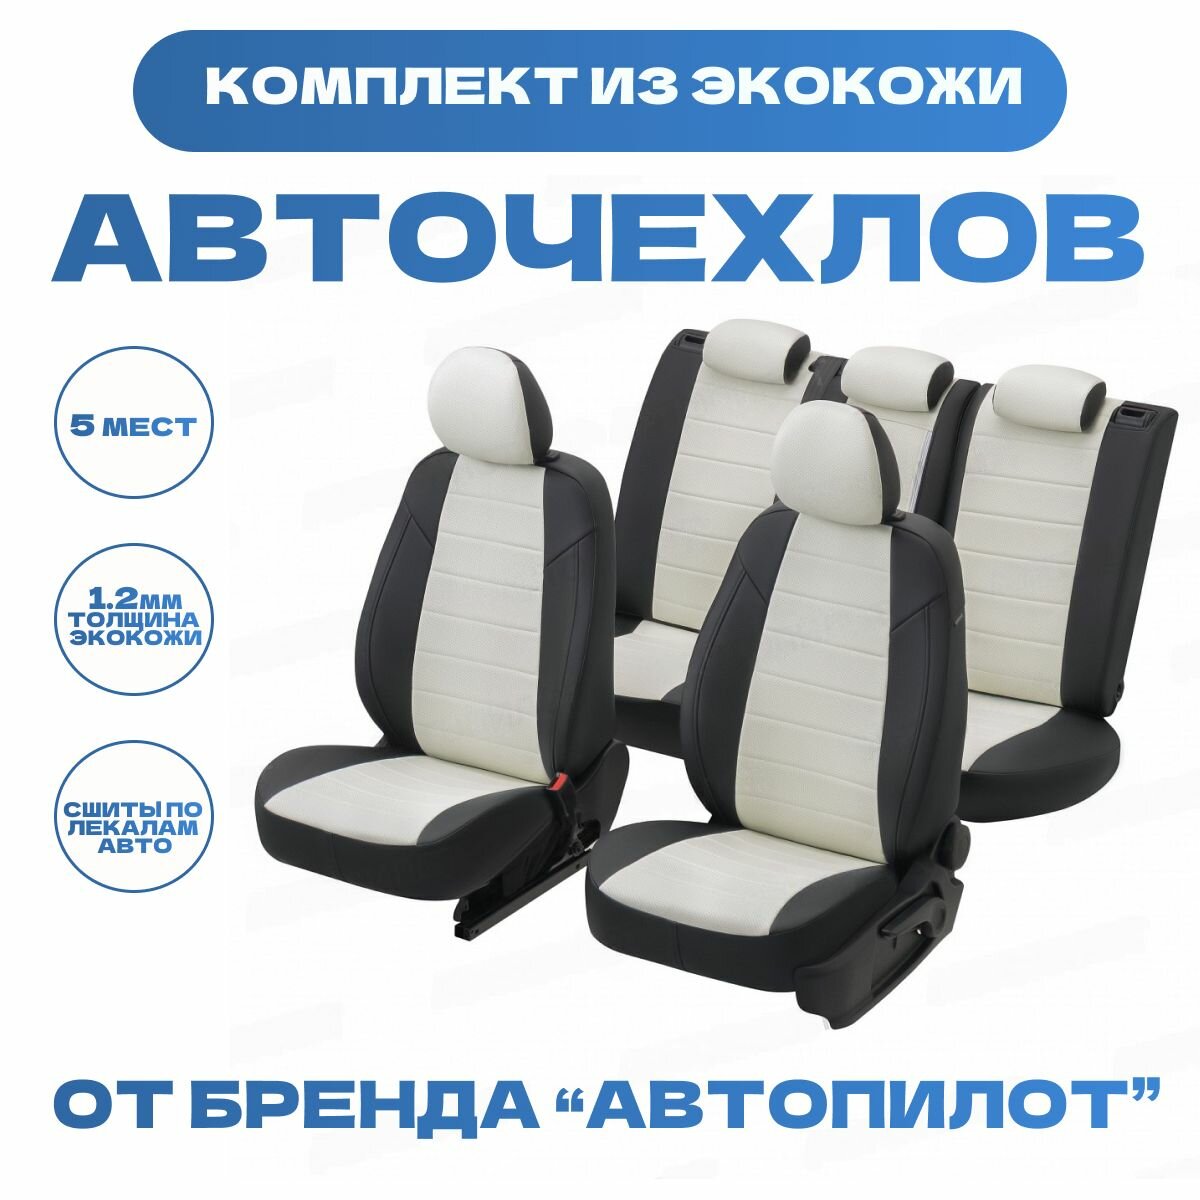 Модельные авточехлы АВТОПИЛОТ для SsangYong Rexton II (2007-2012гг) / UAZ Patriot (2007-2014гг) экокожа, черно-белые